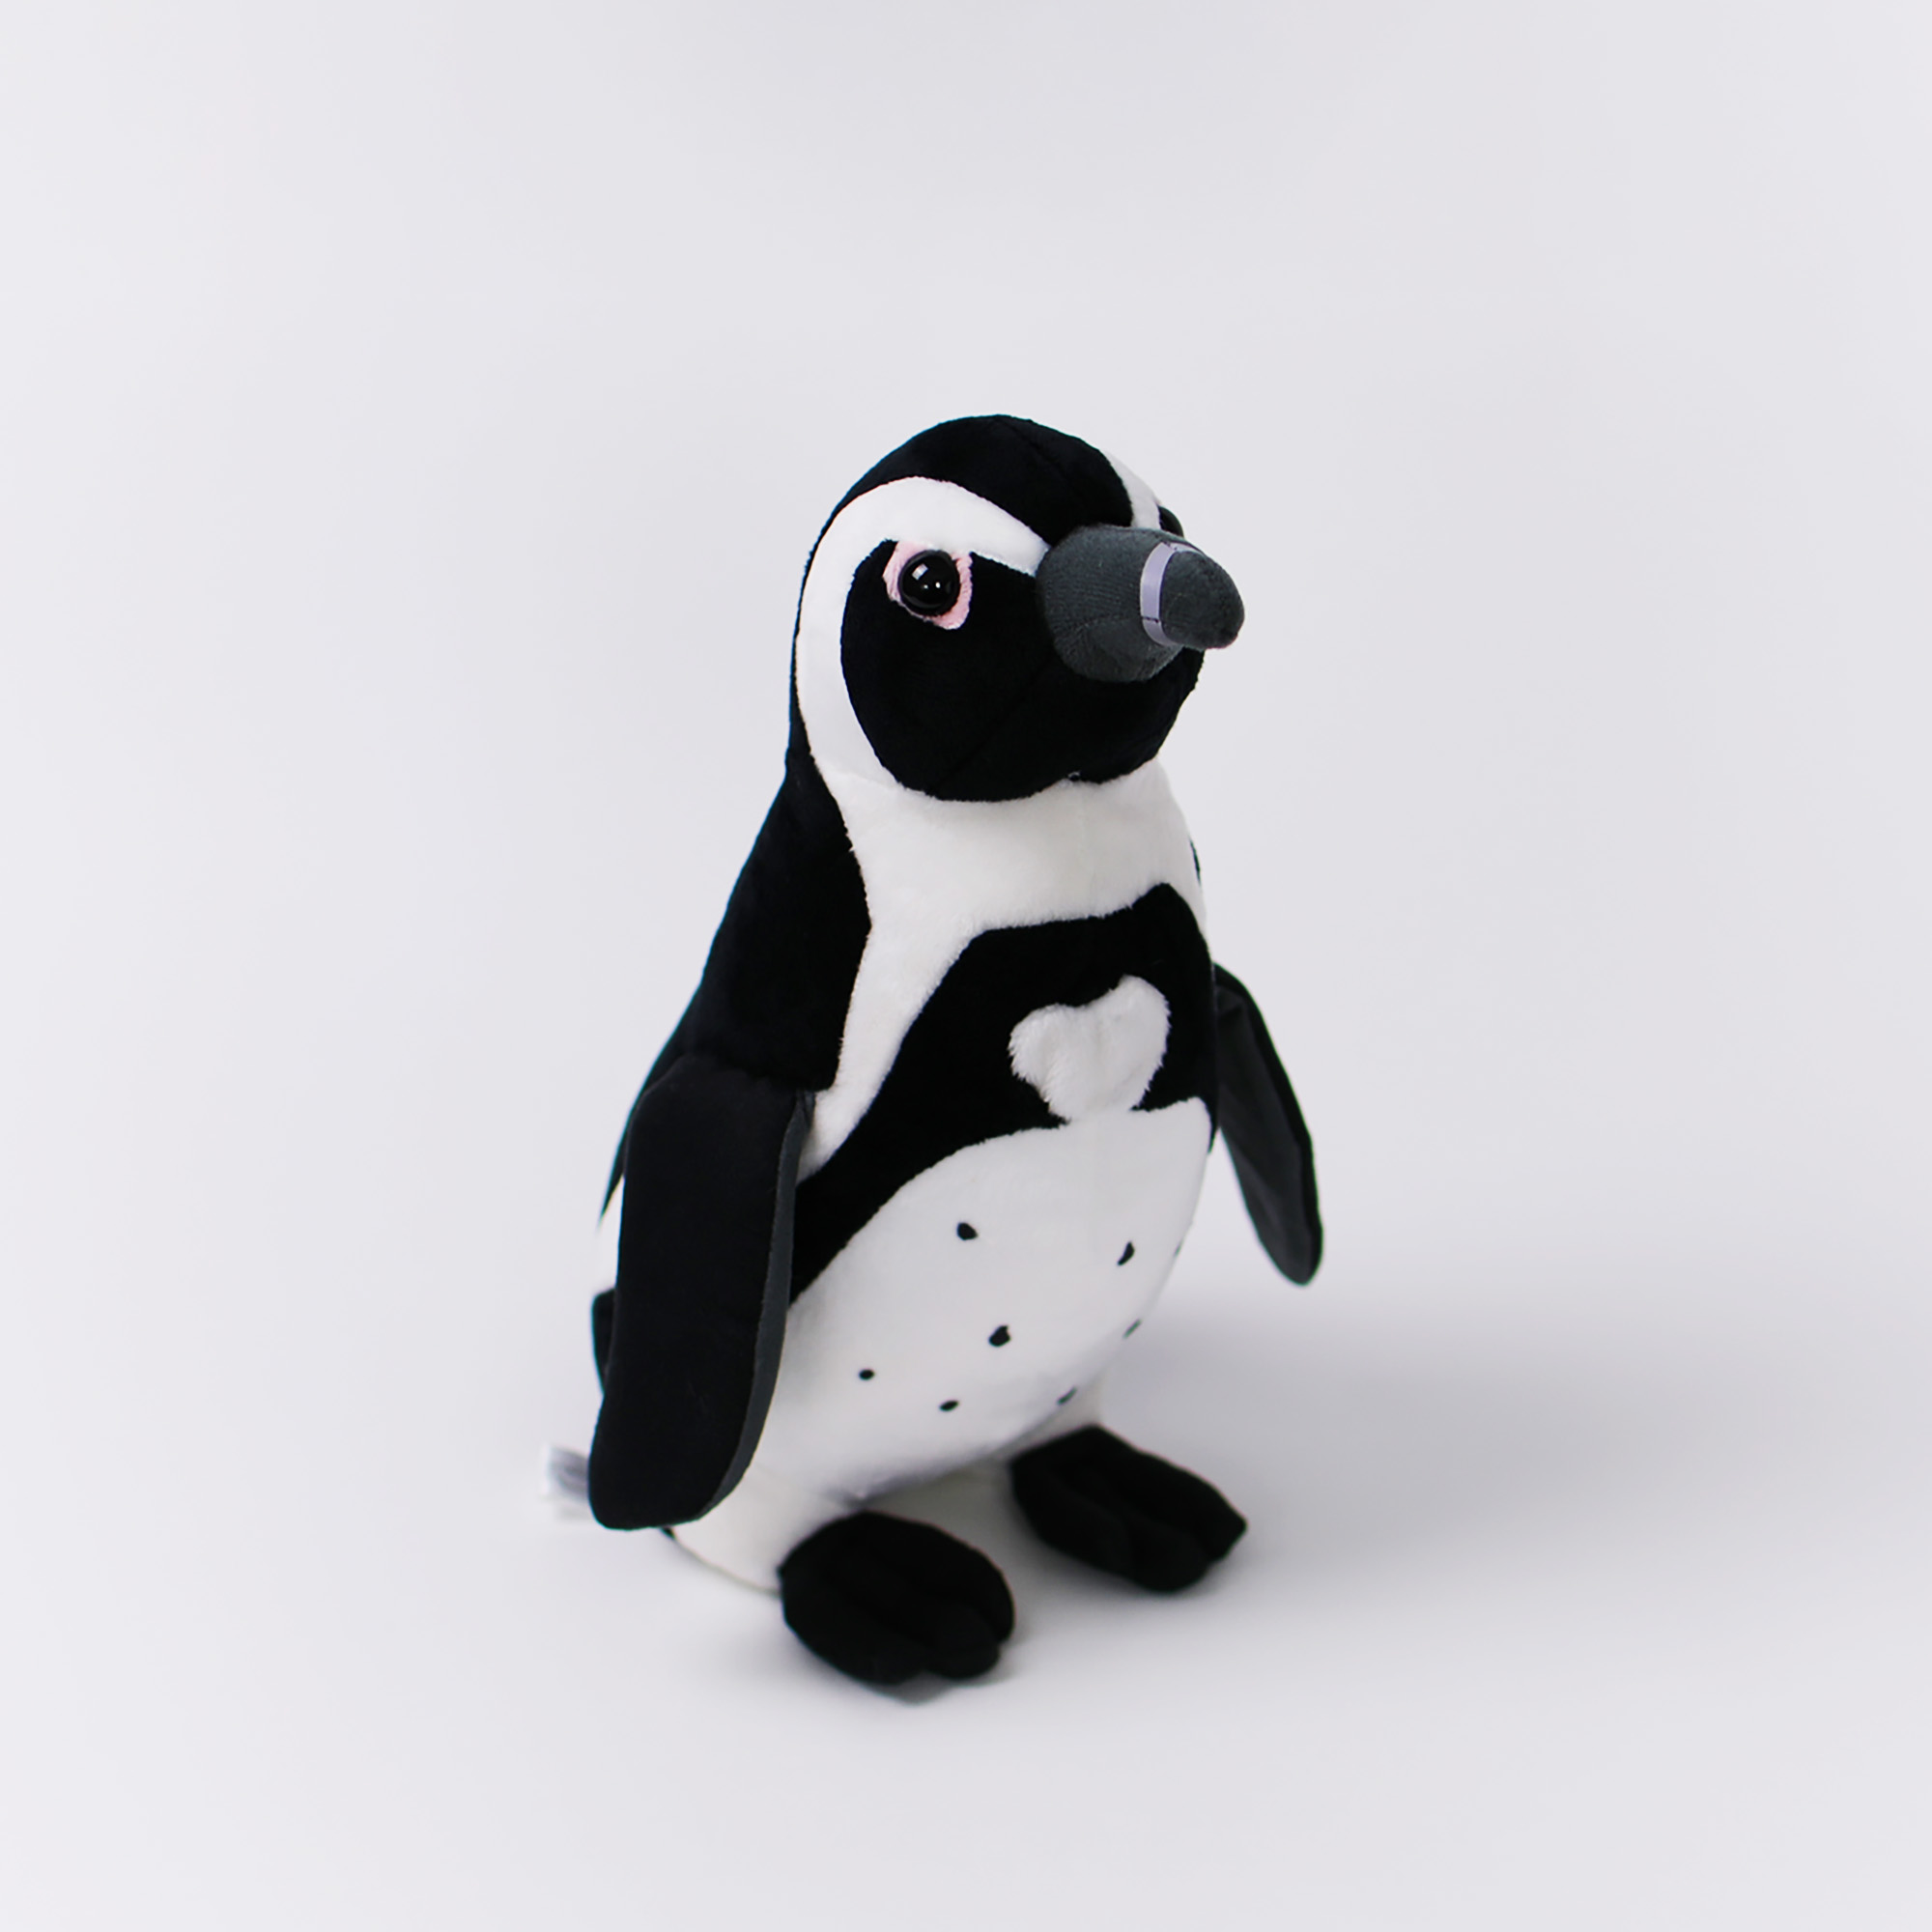 終了しました ケープペンギンの愛称を募集中です マリンワールド海の中道